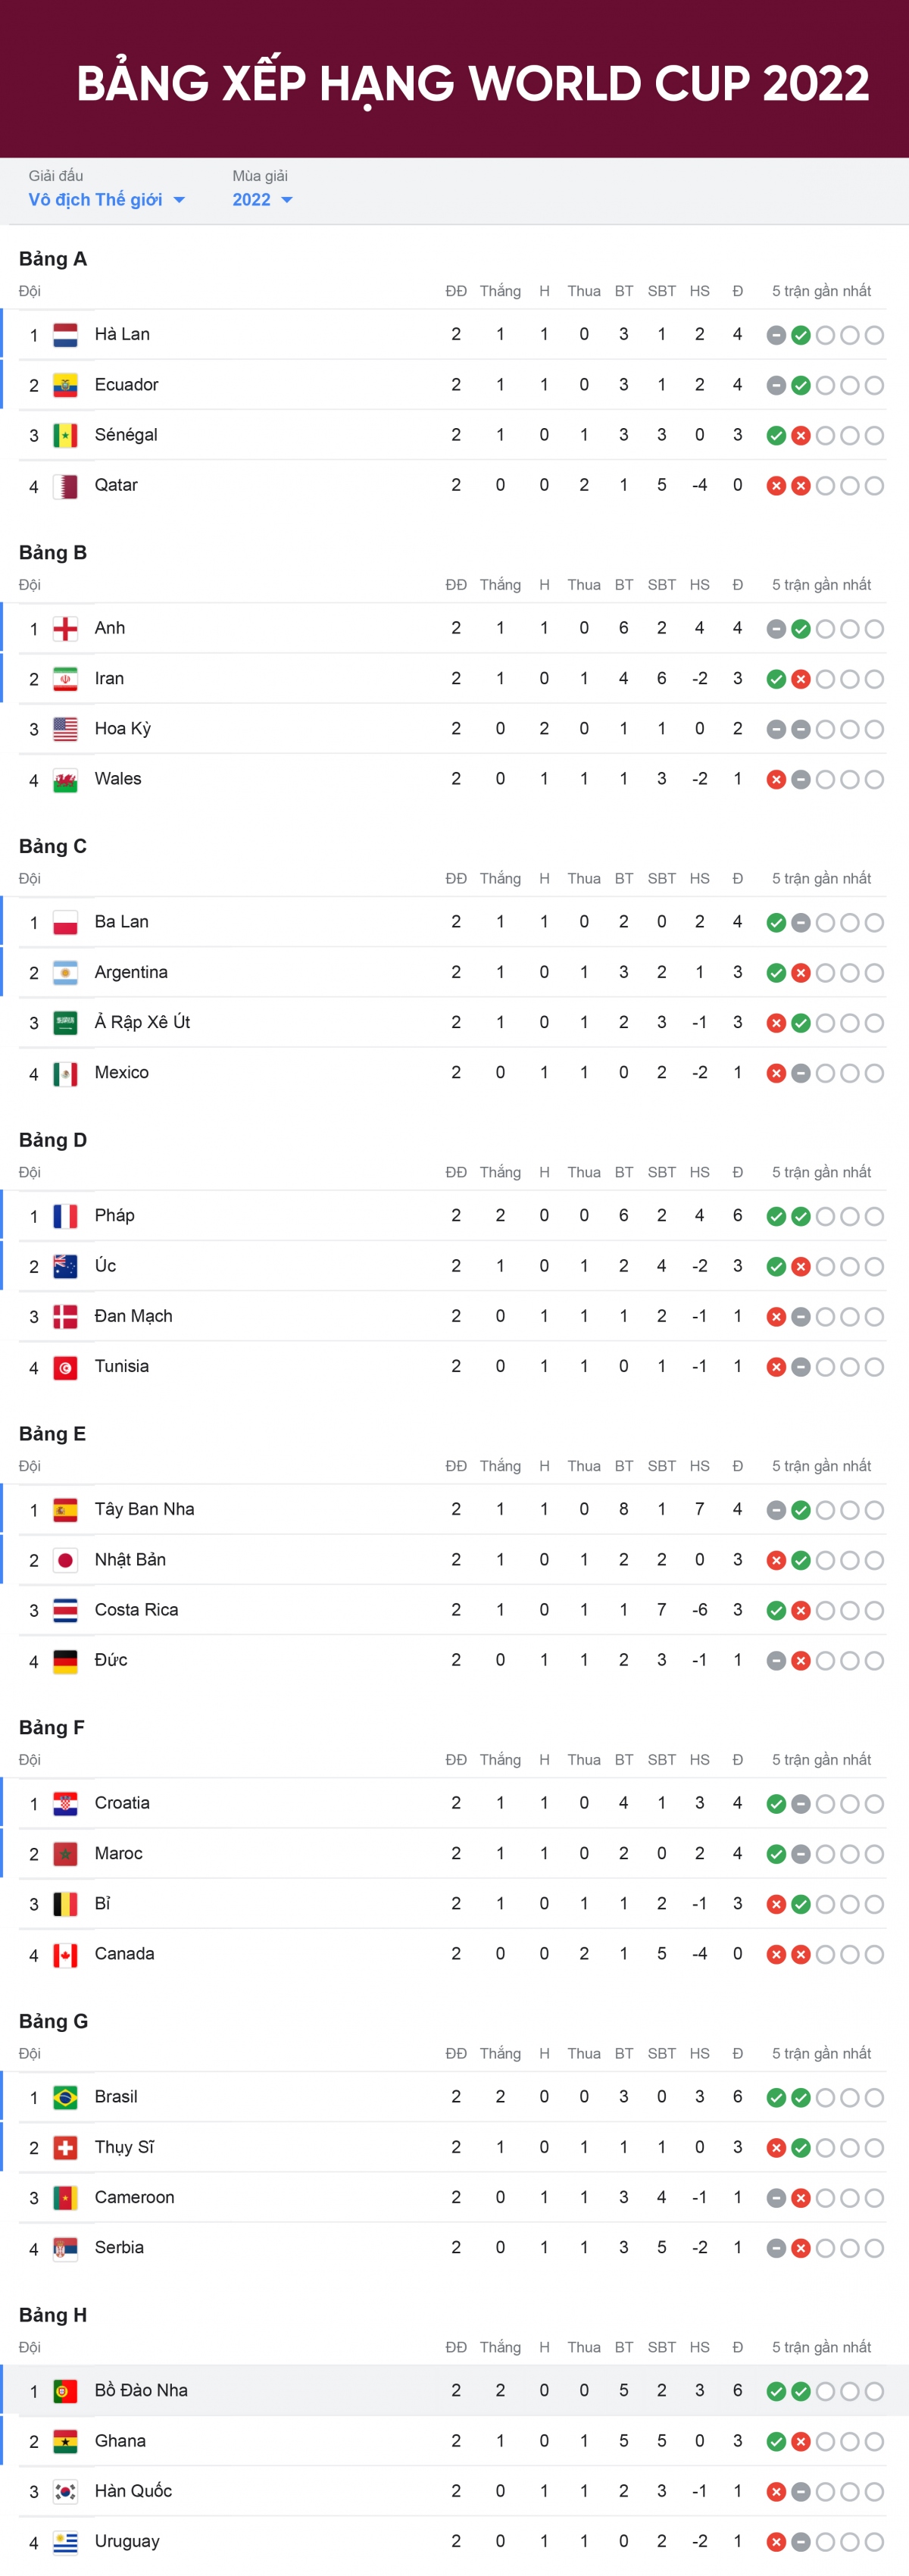 Bảng xếp hạng World Cup 2022 mới nhất: 3 đội có vé sớm, 2 đội đã bị loại - Ảnh 1.